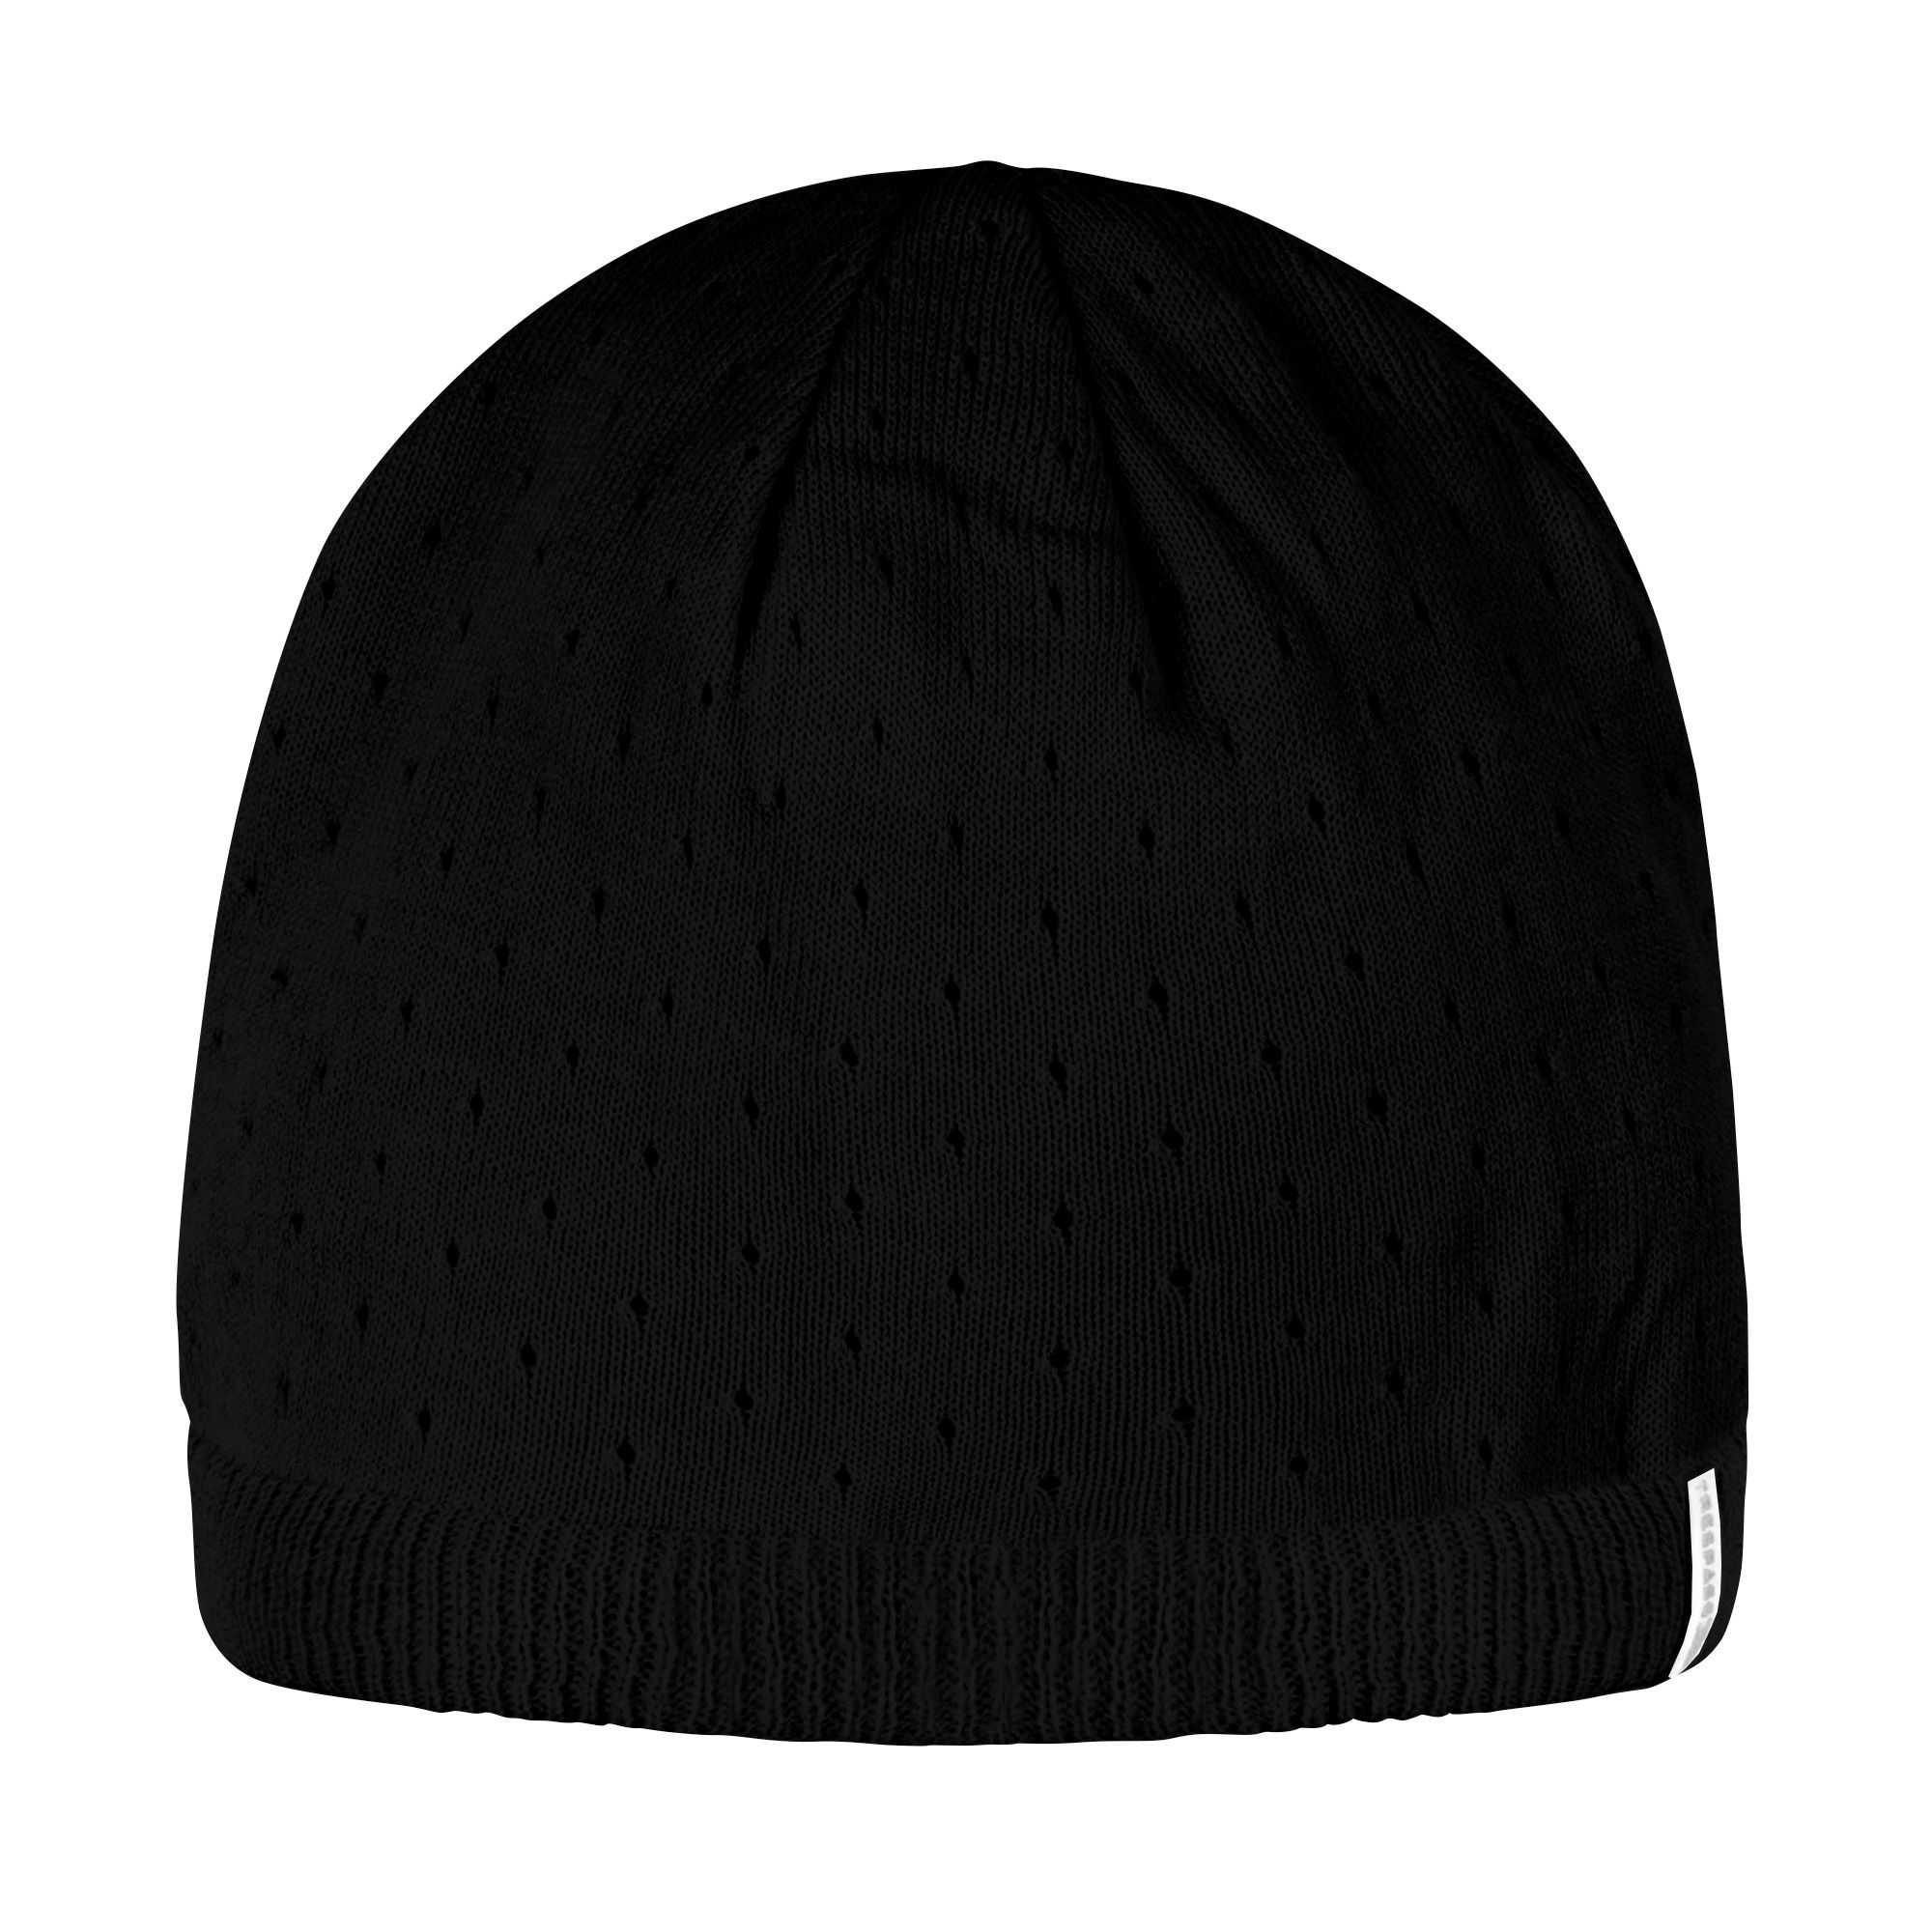 Trespass Womens/Ladies Beryl Knitted Beanie Hat (Black)